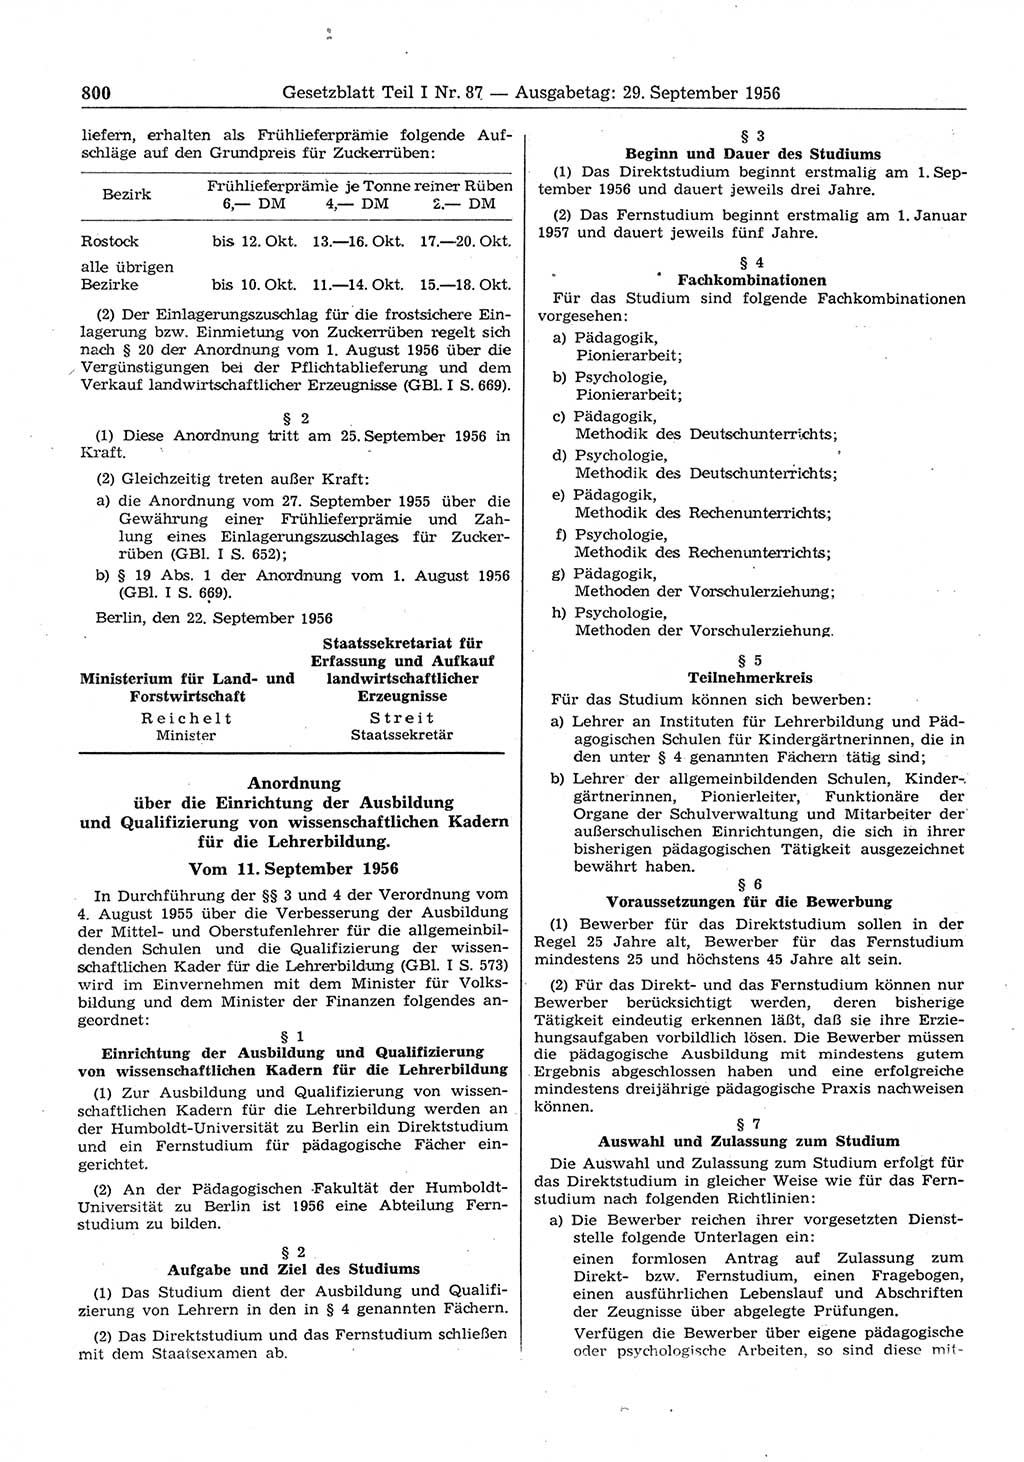 Gesetzblatt (GBl.) der Deutschen Demokratischen Republik (DDR) Teil Ⅰ 1956, Seite 800 (GBl. DDR Ⅰ 1956, S. 800)